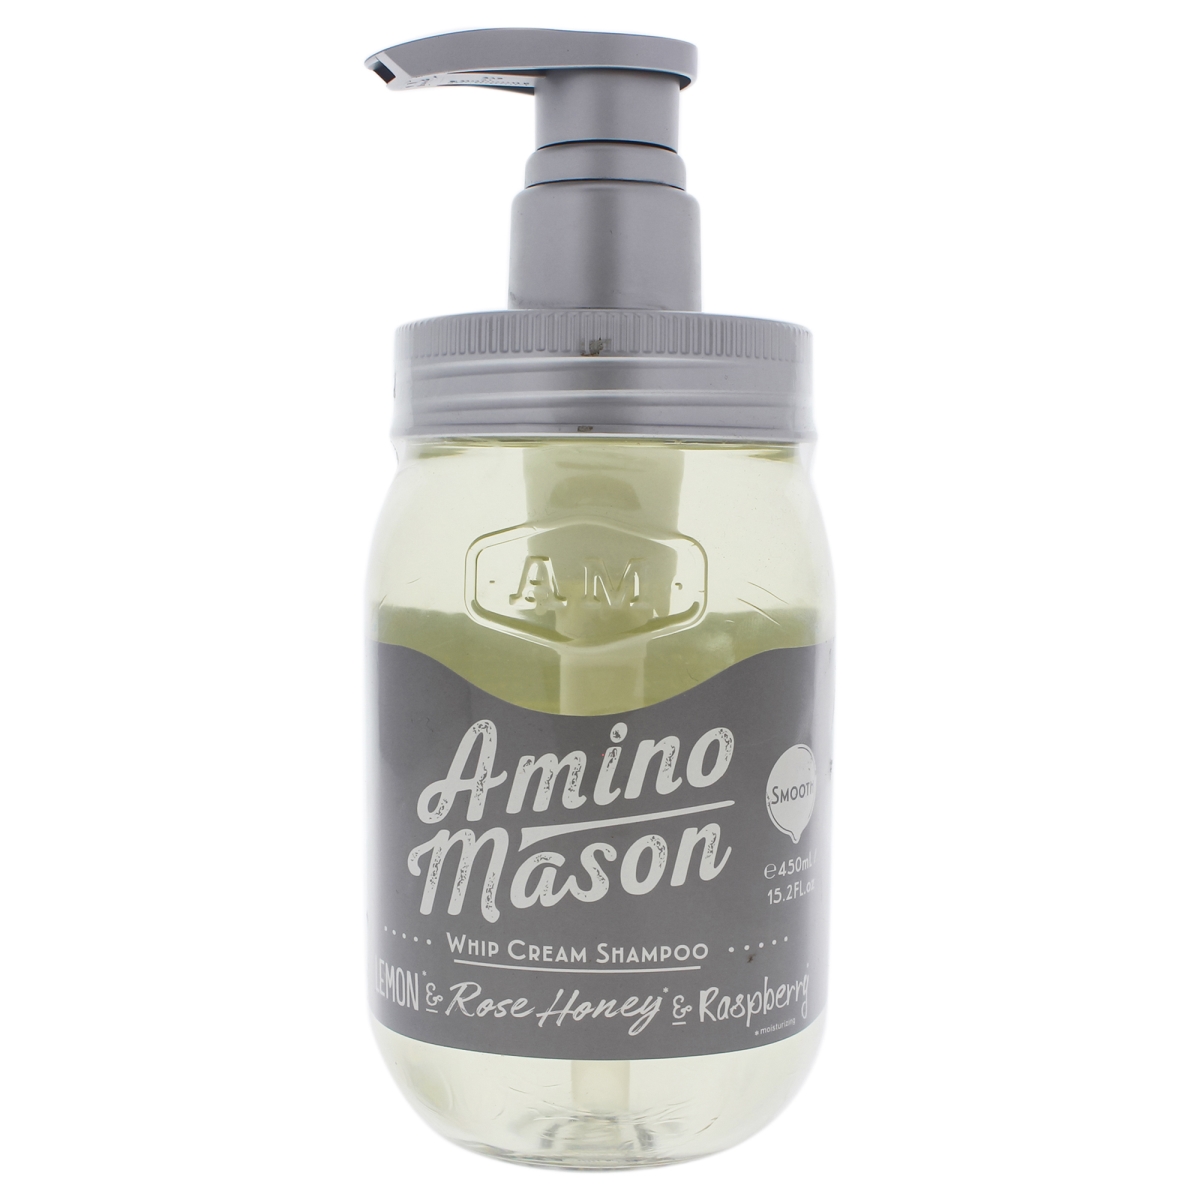 I0088186 Smooth Whip Cream Shampoo For Unisex - 15.2 Oz